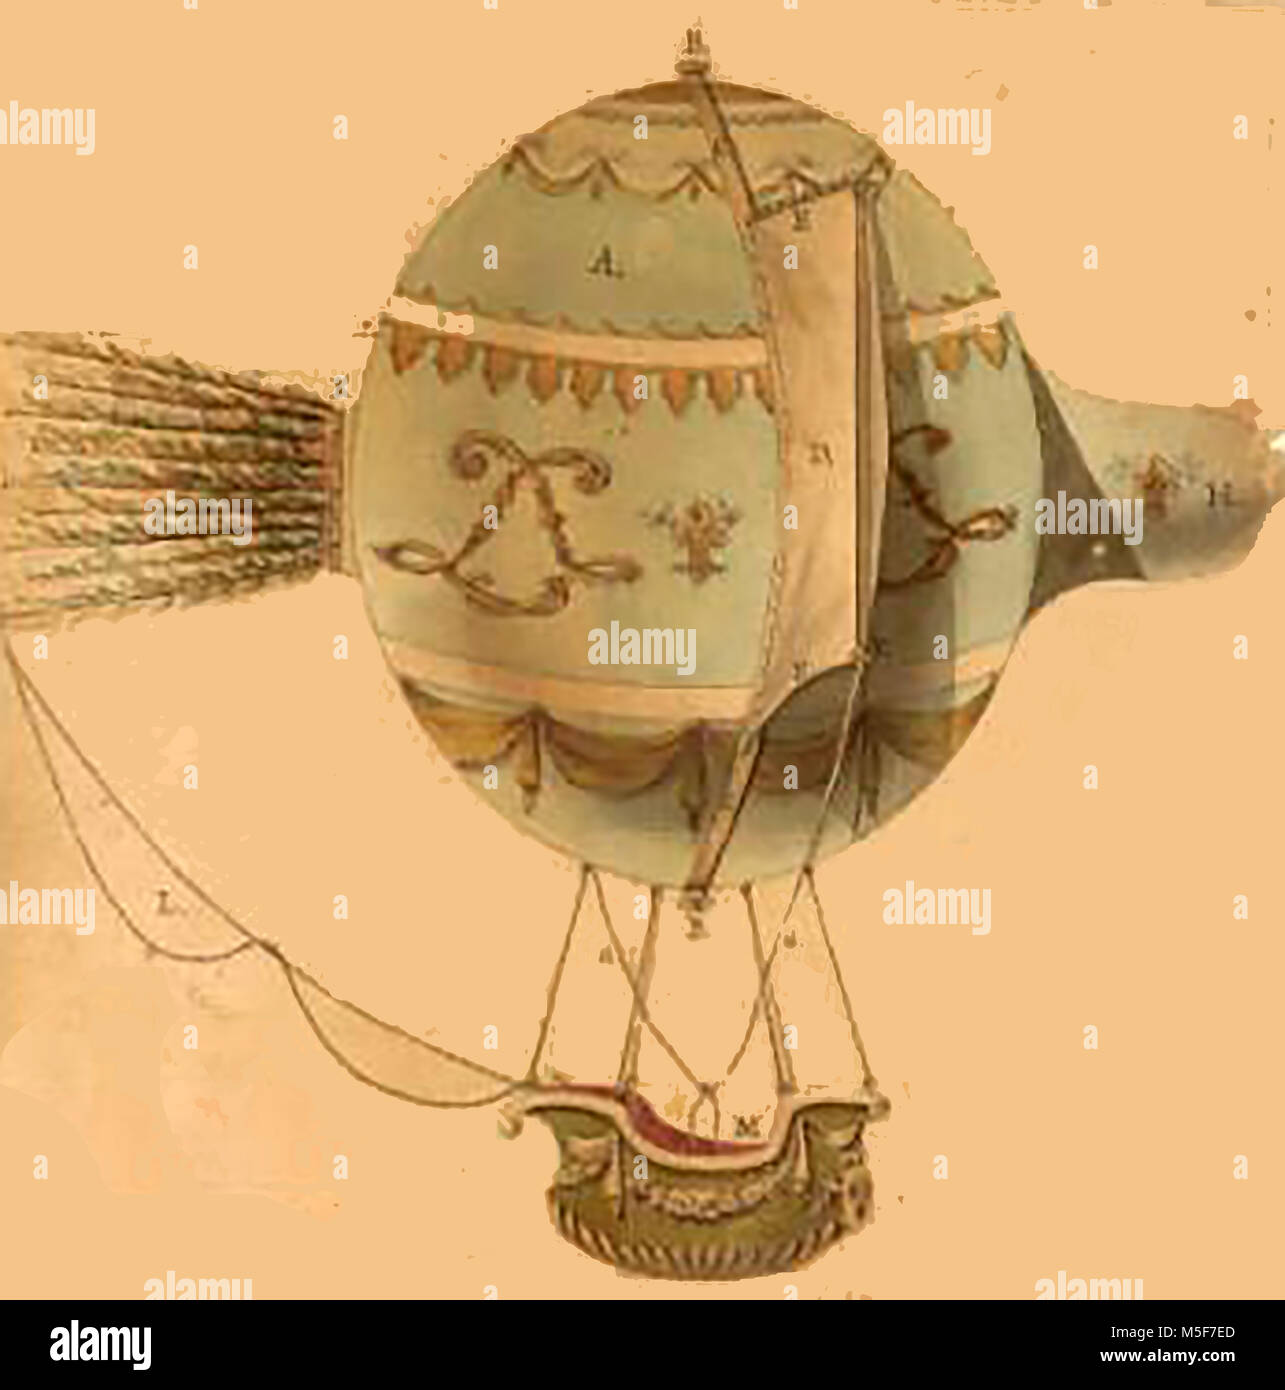 Aeronautica storico, palloncini e macchine volanti - uno dei primi acquerelli di schizzo di un palloncino Foto Stock